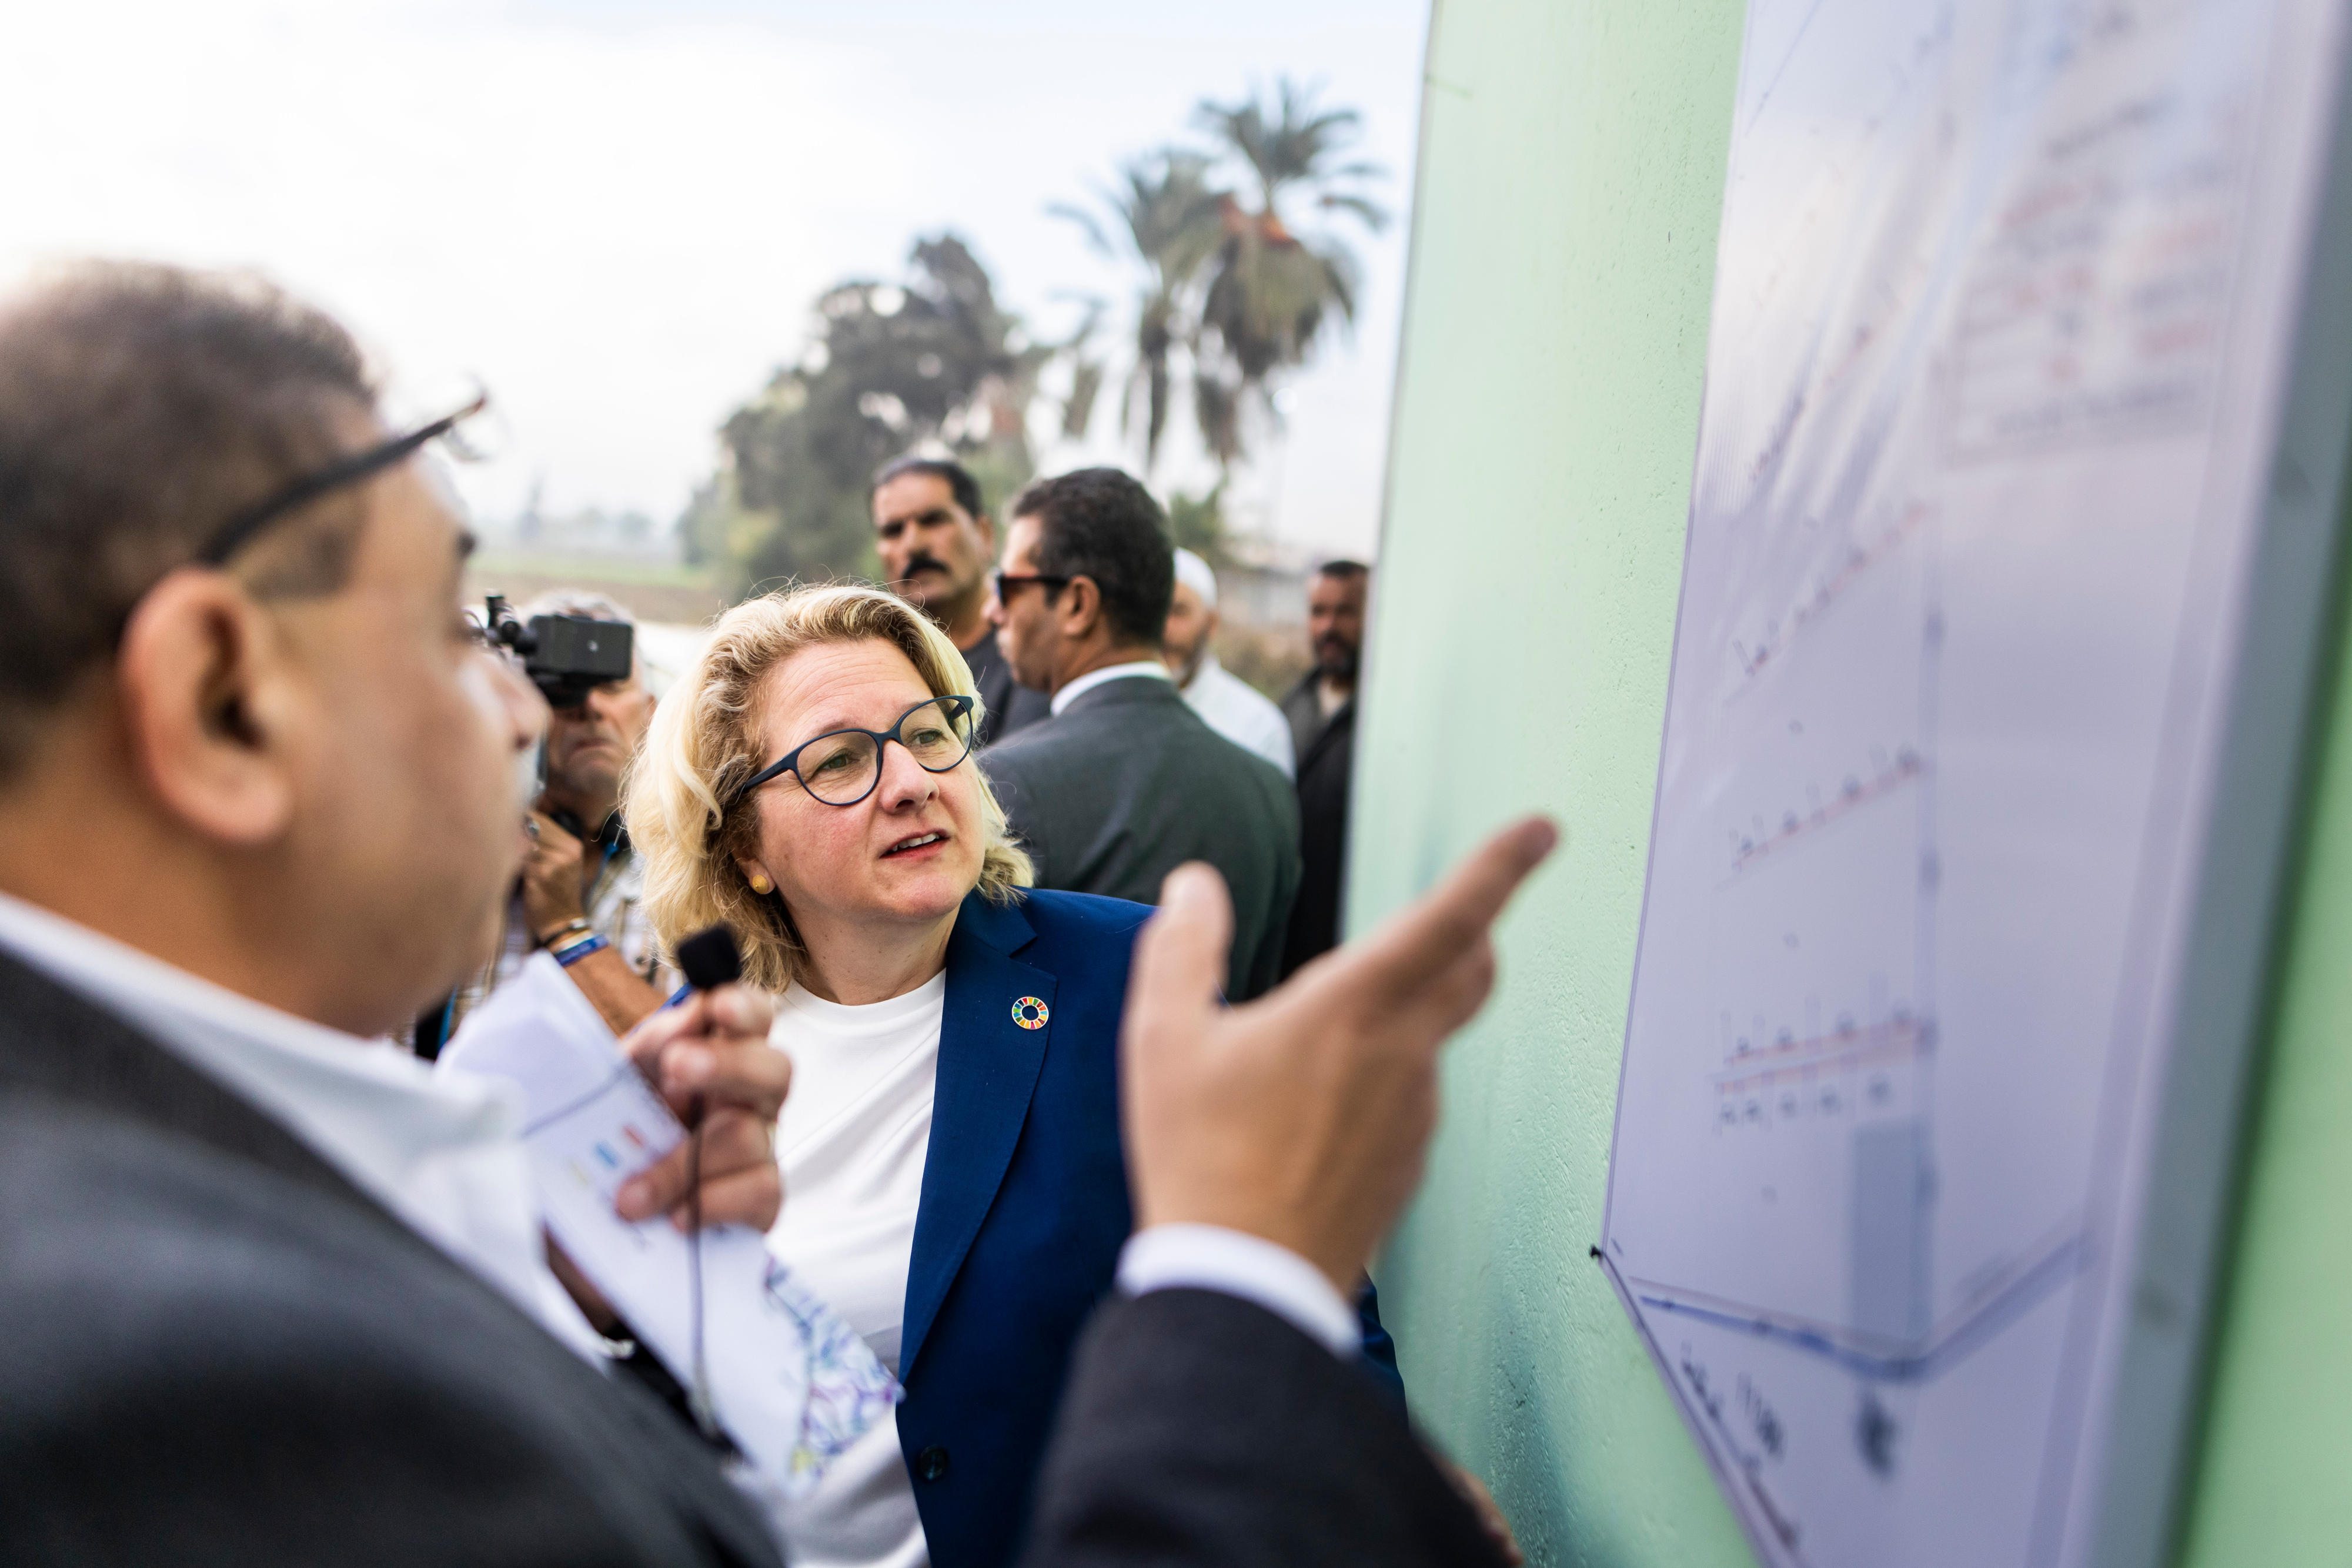 Entwicklungsministerin Svenja Schulze besucht in Ägypten ein Projekt zur Verbesserung des Bewässerungssystems in ländlichen Gebieten.